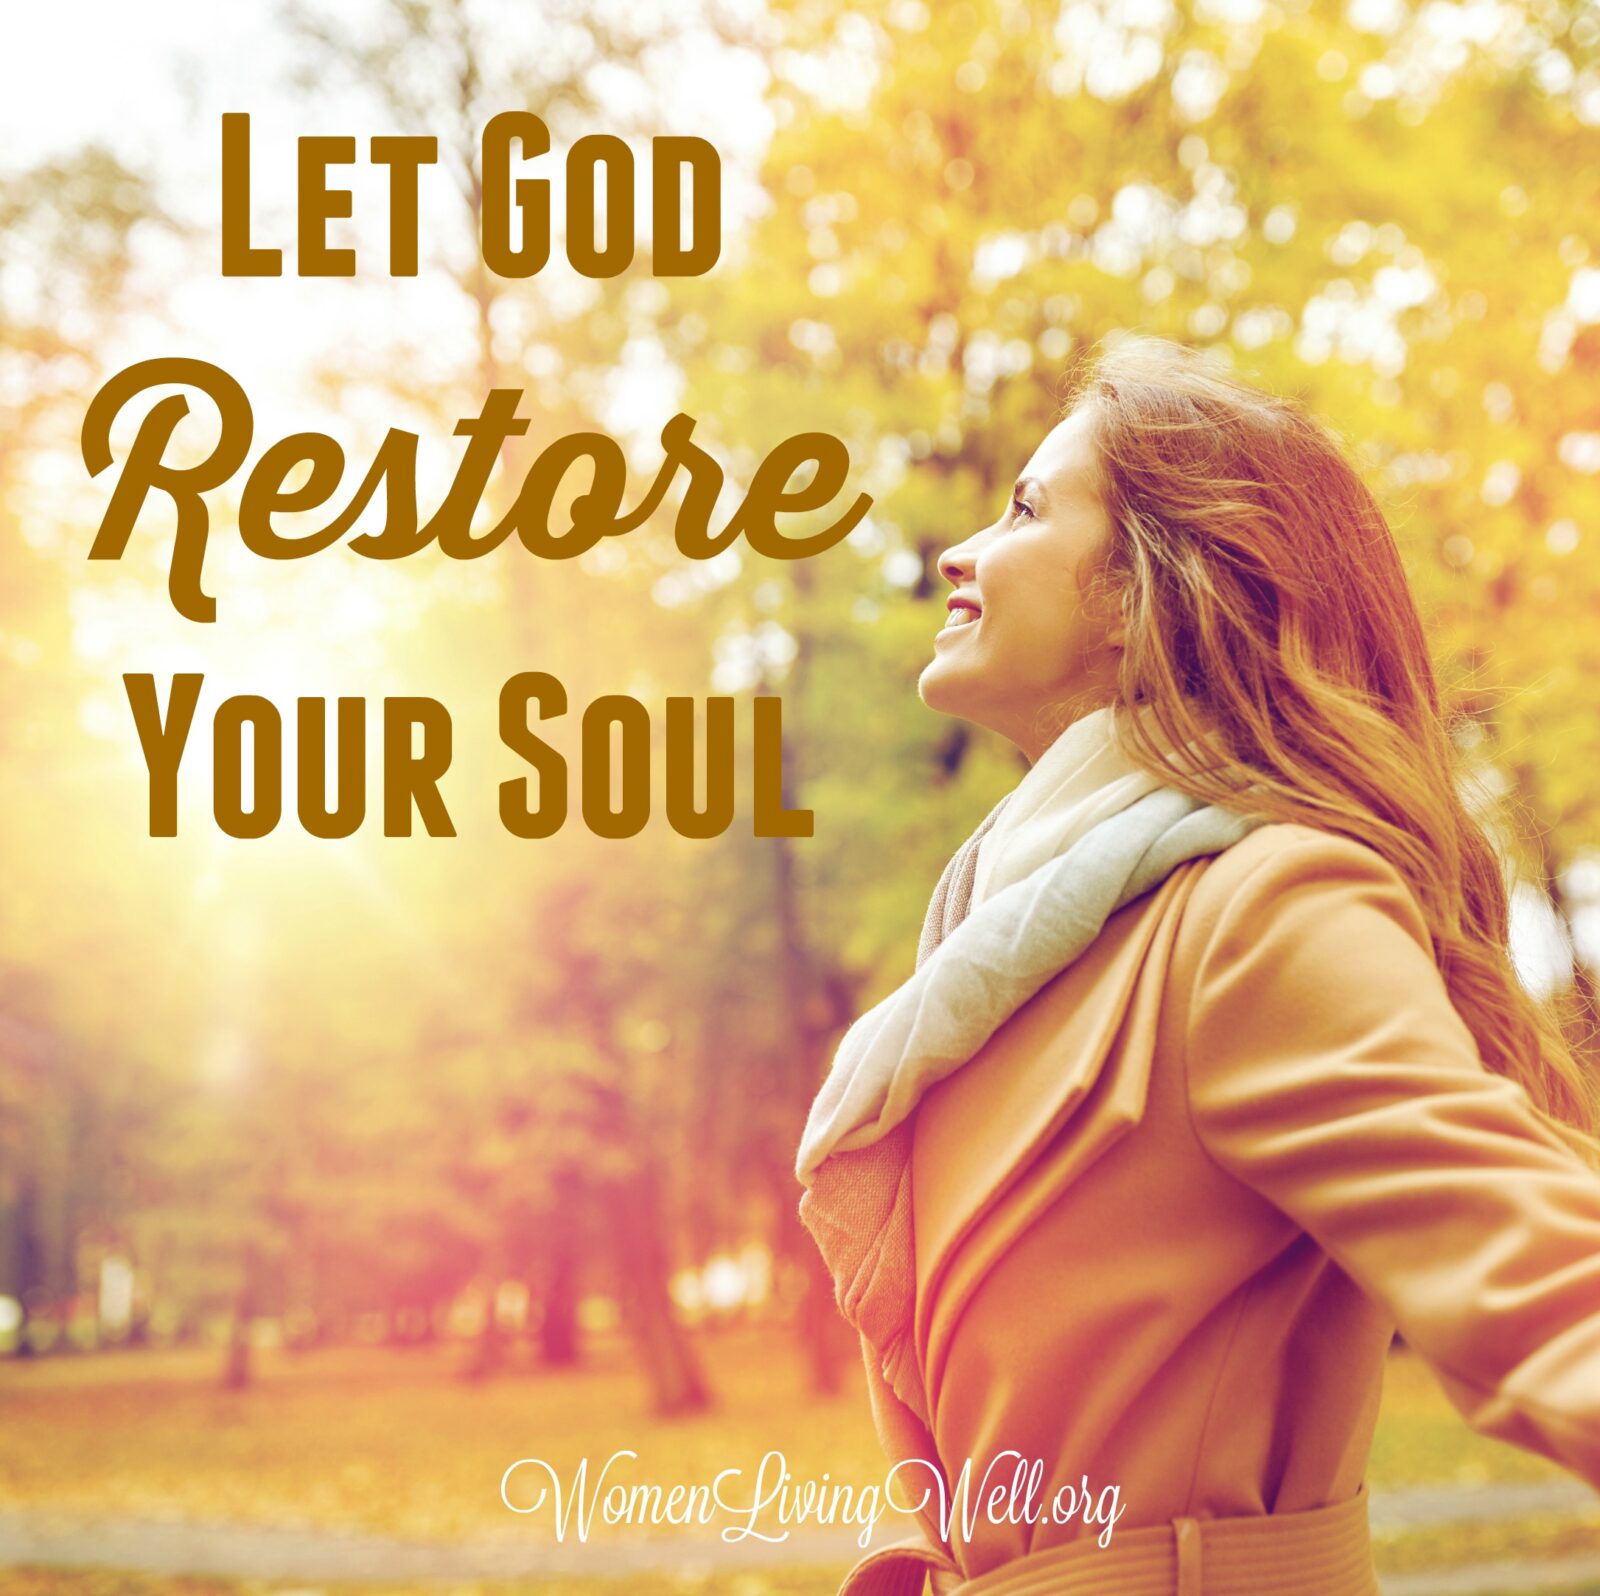 Let God Restore Your Soul